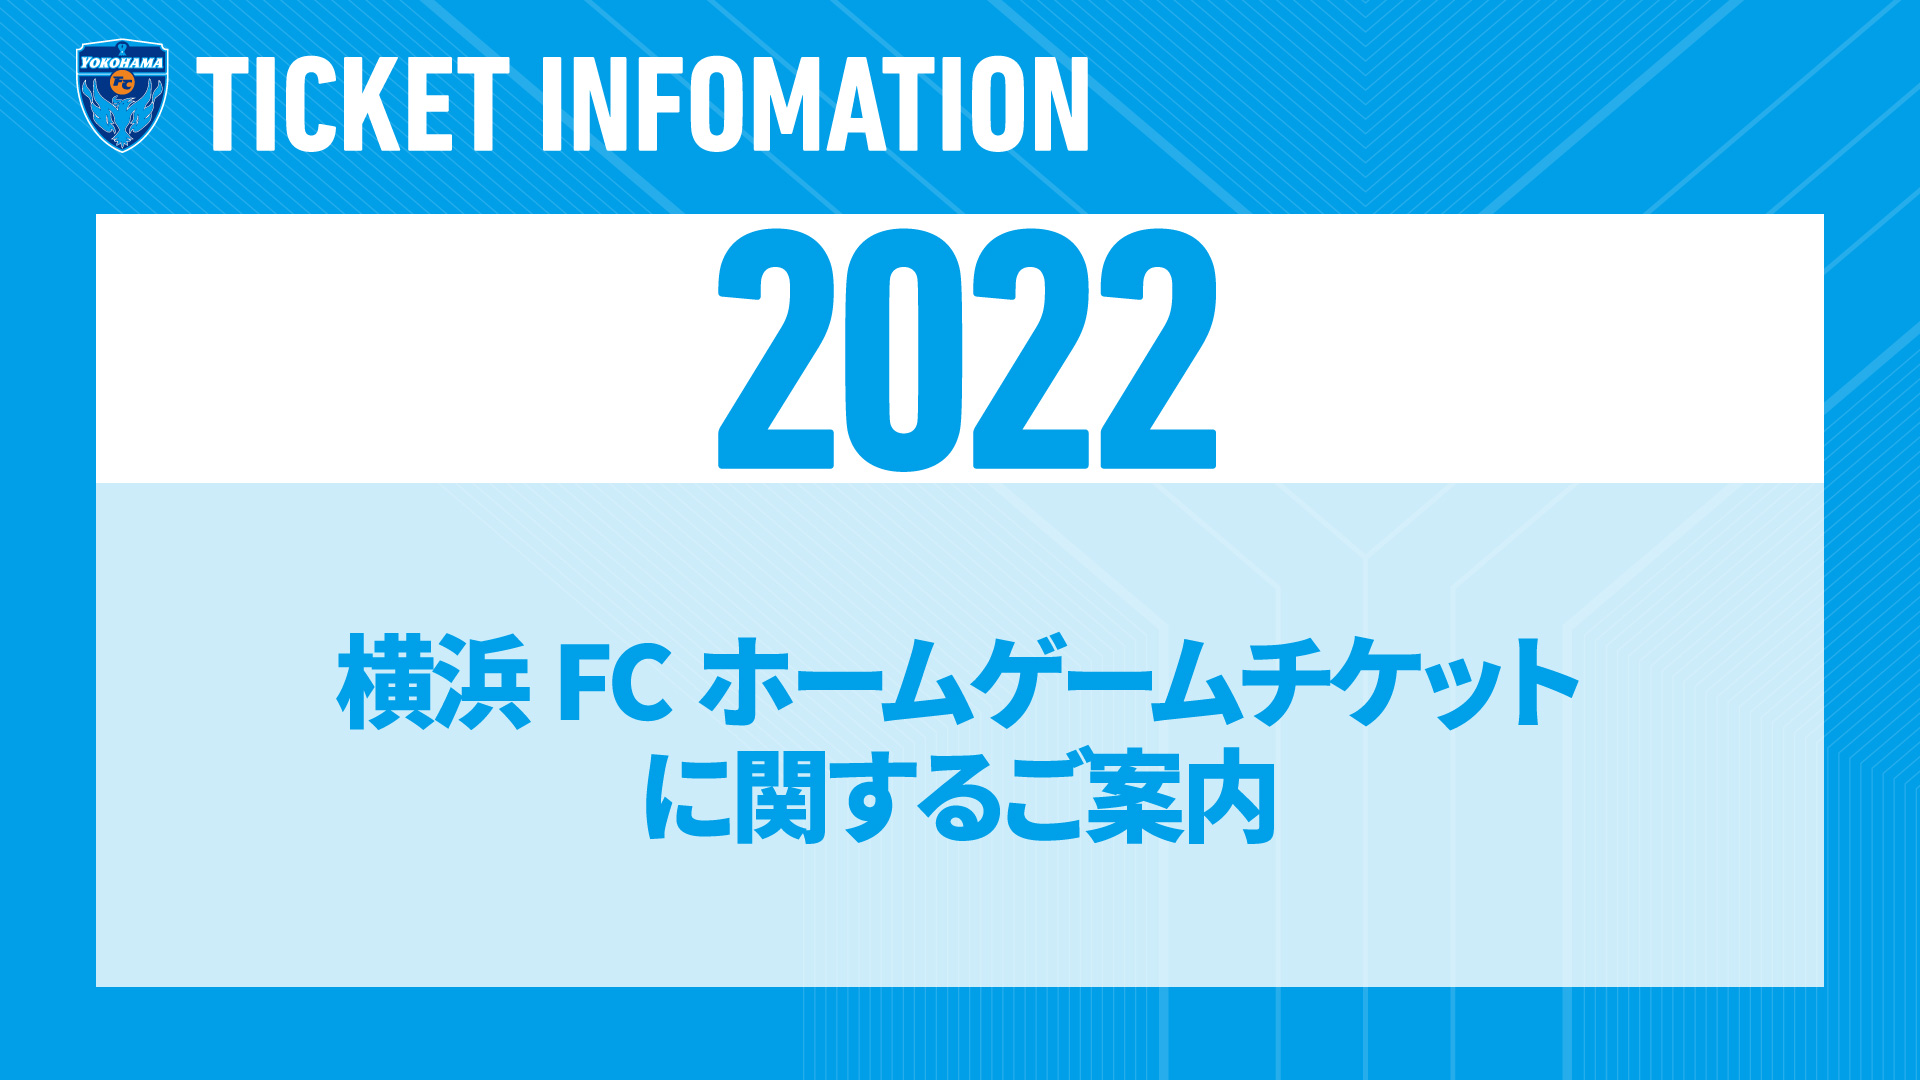 22横浜fcホームゲームチケット販売に関するご案内 横浜fcオフィシャルウェブサイト